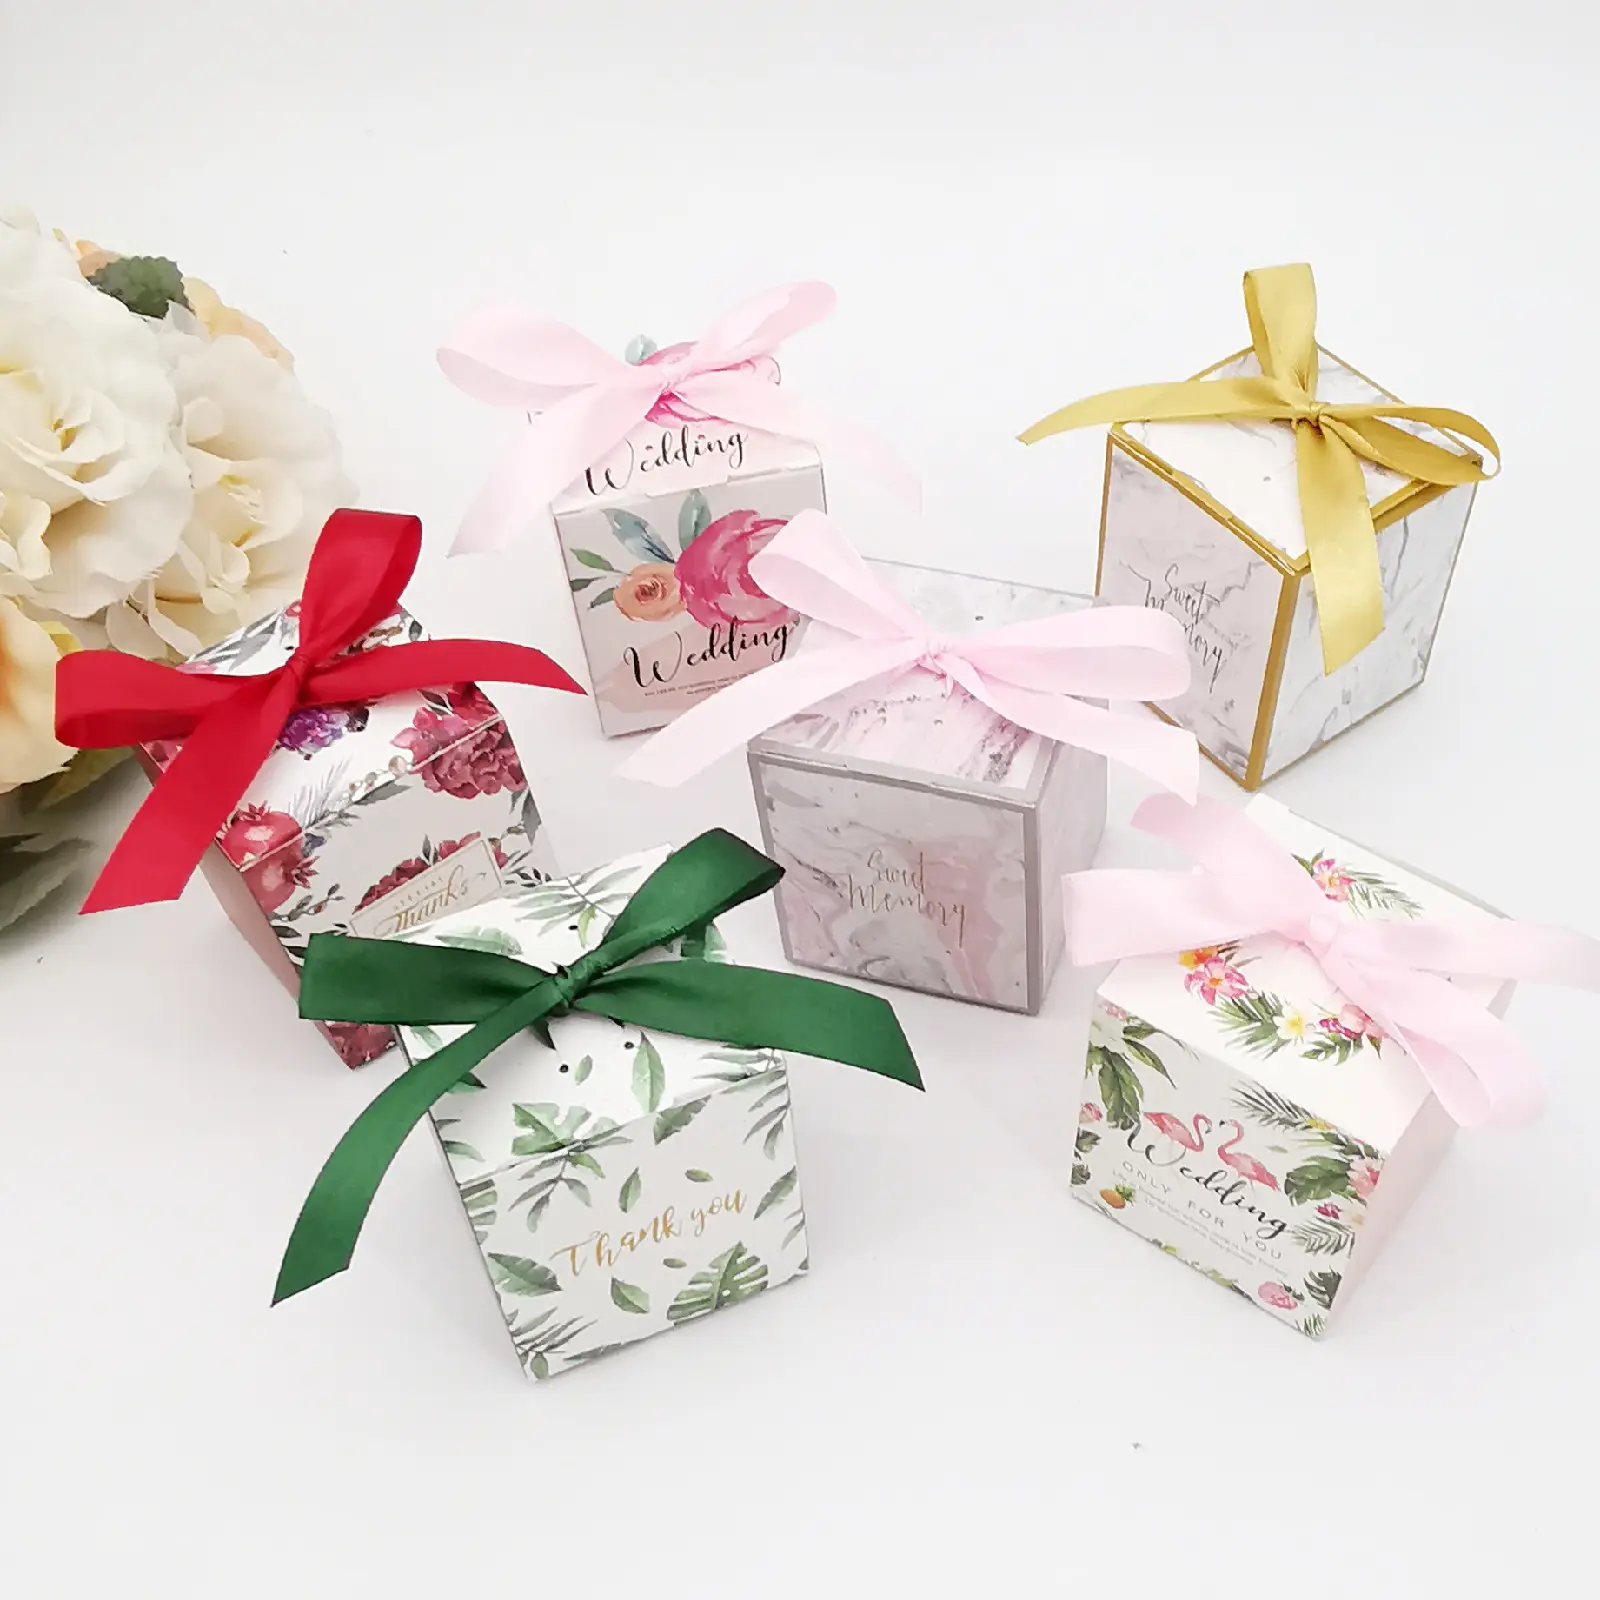 50 Stuks Bedankt Snoepdoos Europese Chocolade Verpakking Geschenkdoos Bruiloft Gunst Doos Voor Gasten Baby Shower Verjaardagsfeestje Decor